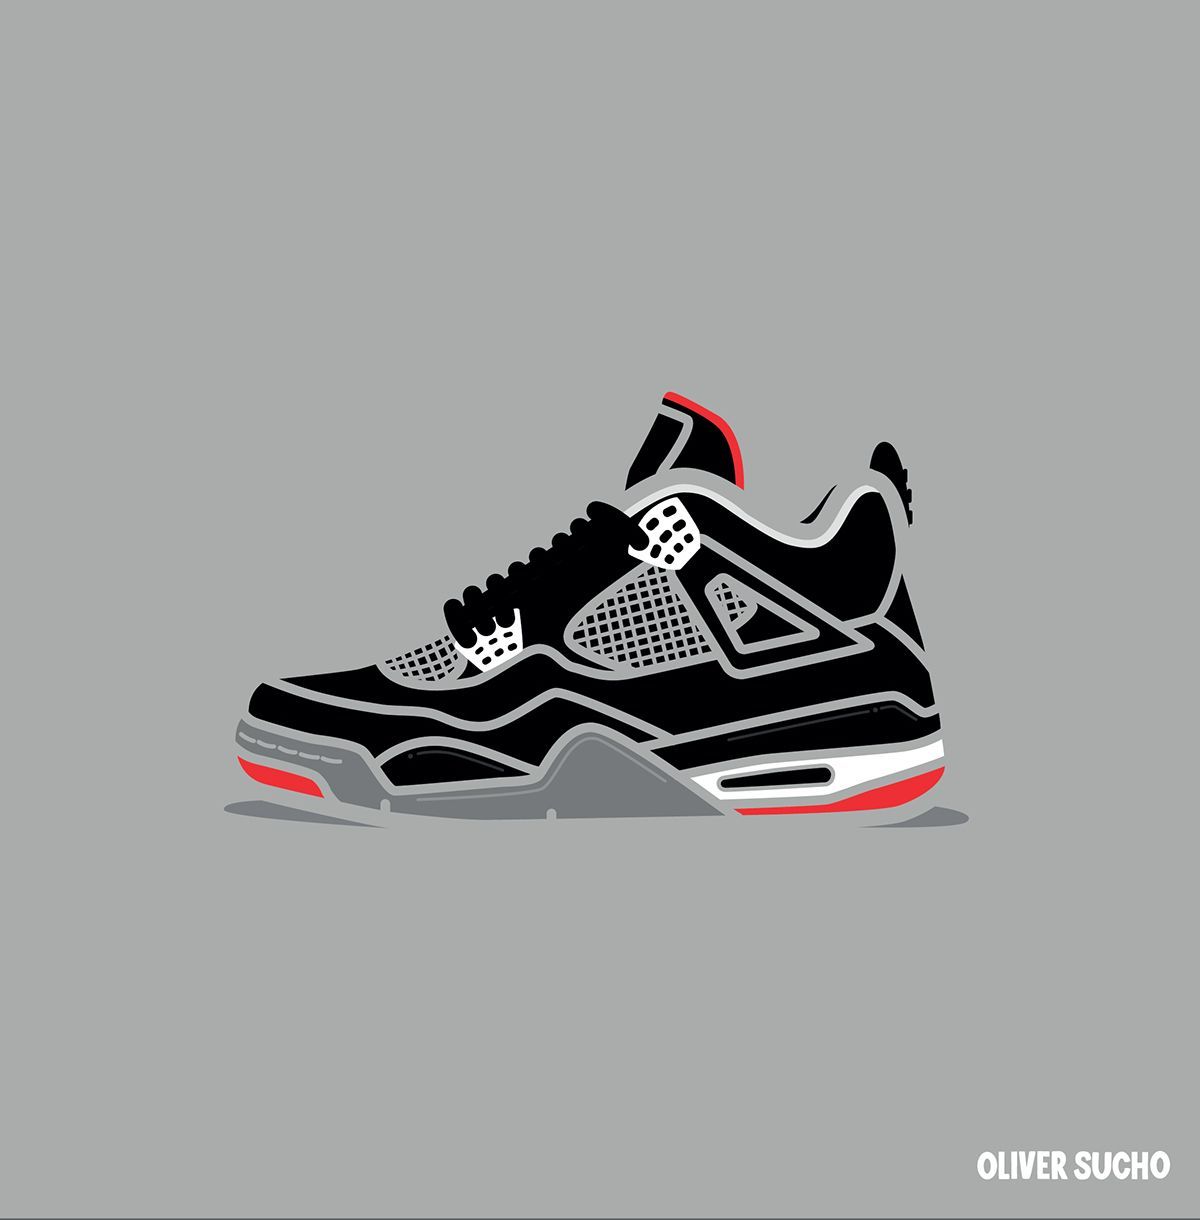 Air Jordan 4 Minimal Illustration Series. Sneakers